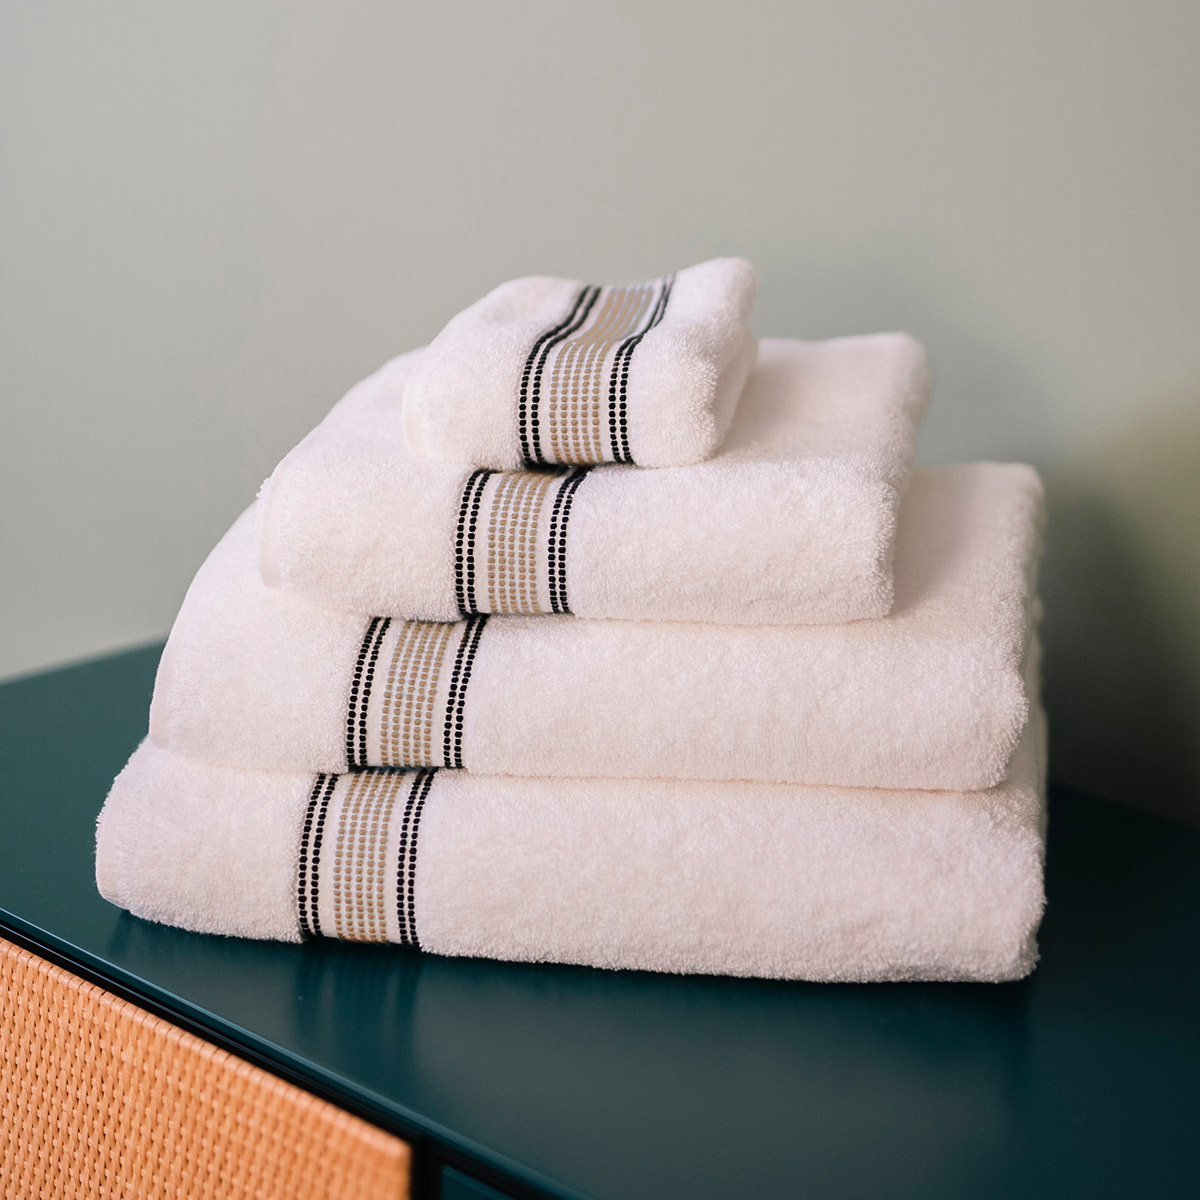 Towel Sicilia, Linen - L30 x W50 cm - Organic cotton - image 3